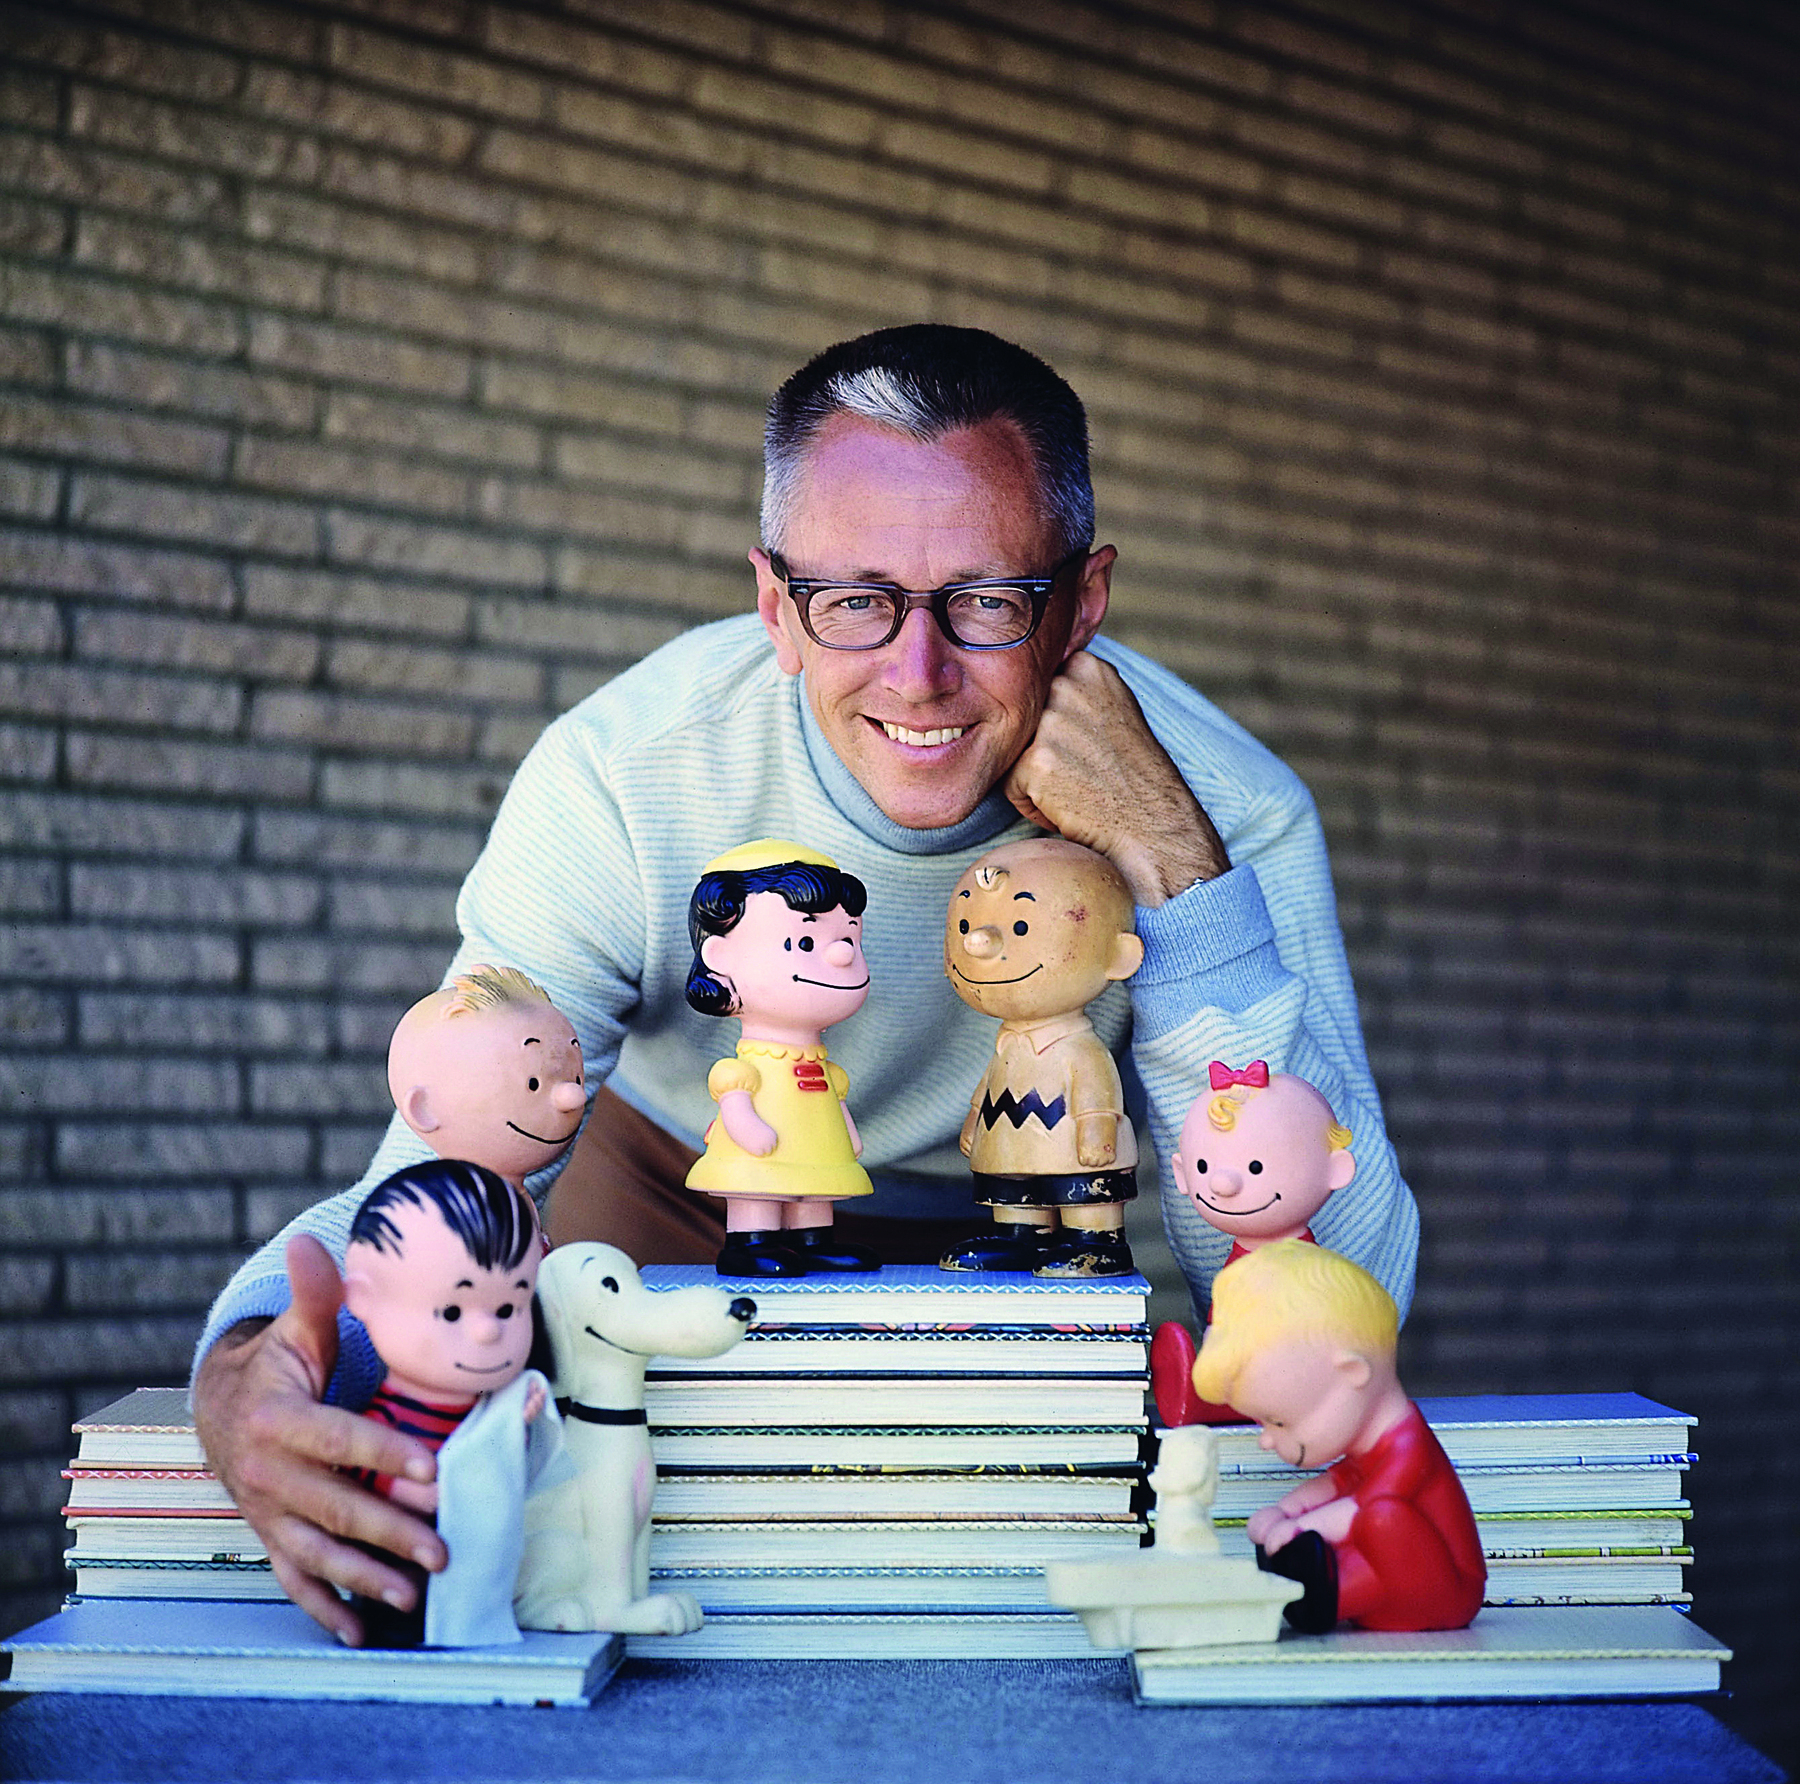 Fotografia. Charles M. Schulz. Homem de aproximadamente 50 anos, cabelo curto e grisalho. Usa óculos e armação escura. Está com o corpo inclinado para frente, com os braços ao redor de bonecos do desenho Charlie Brown.